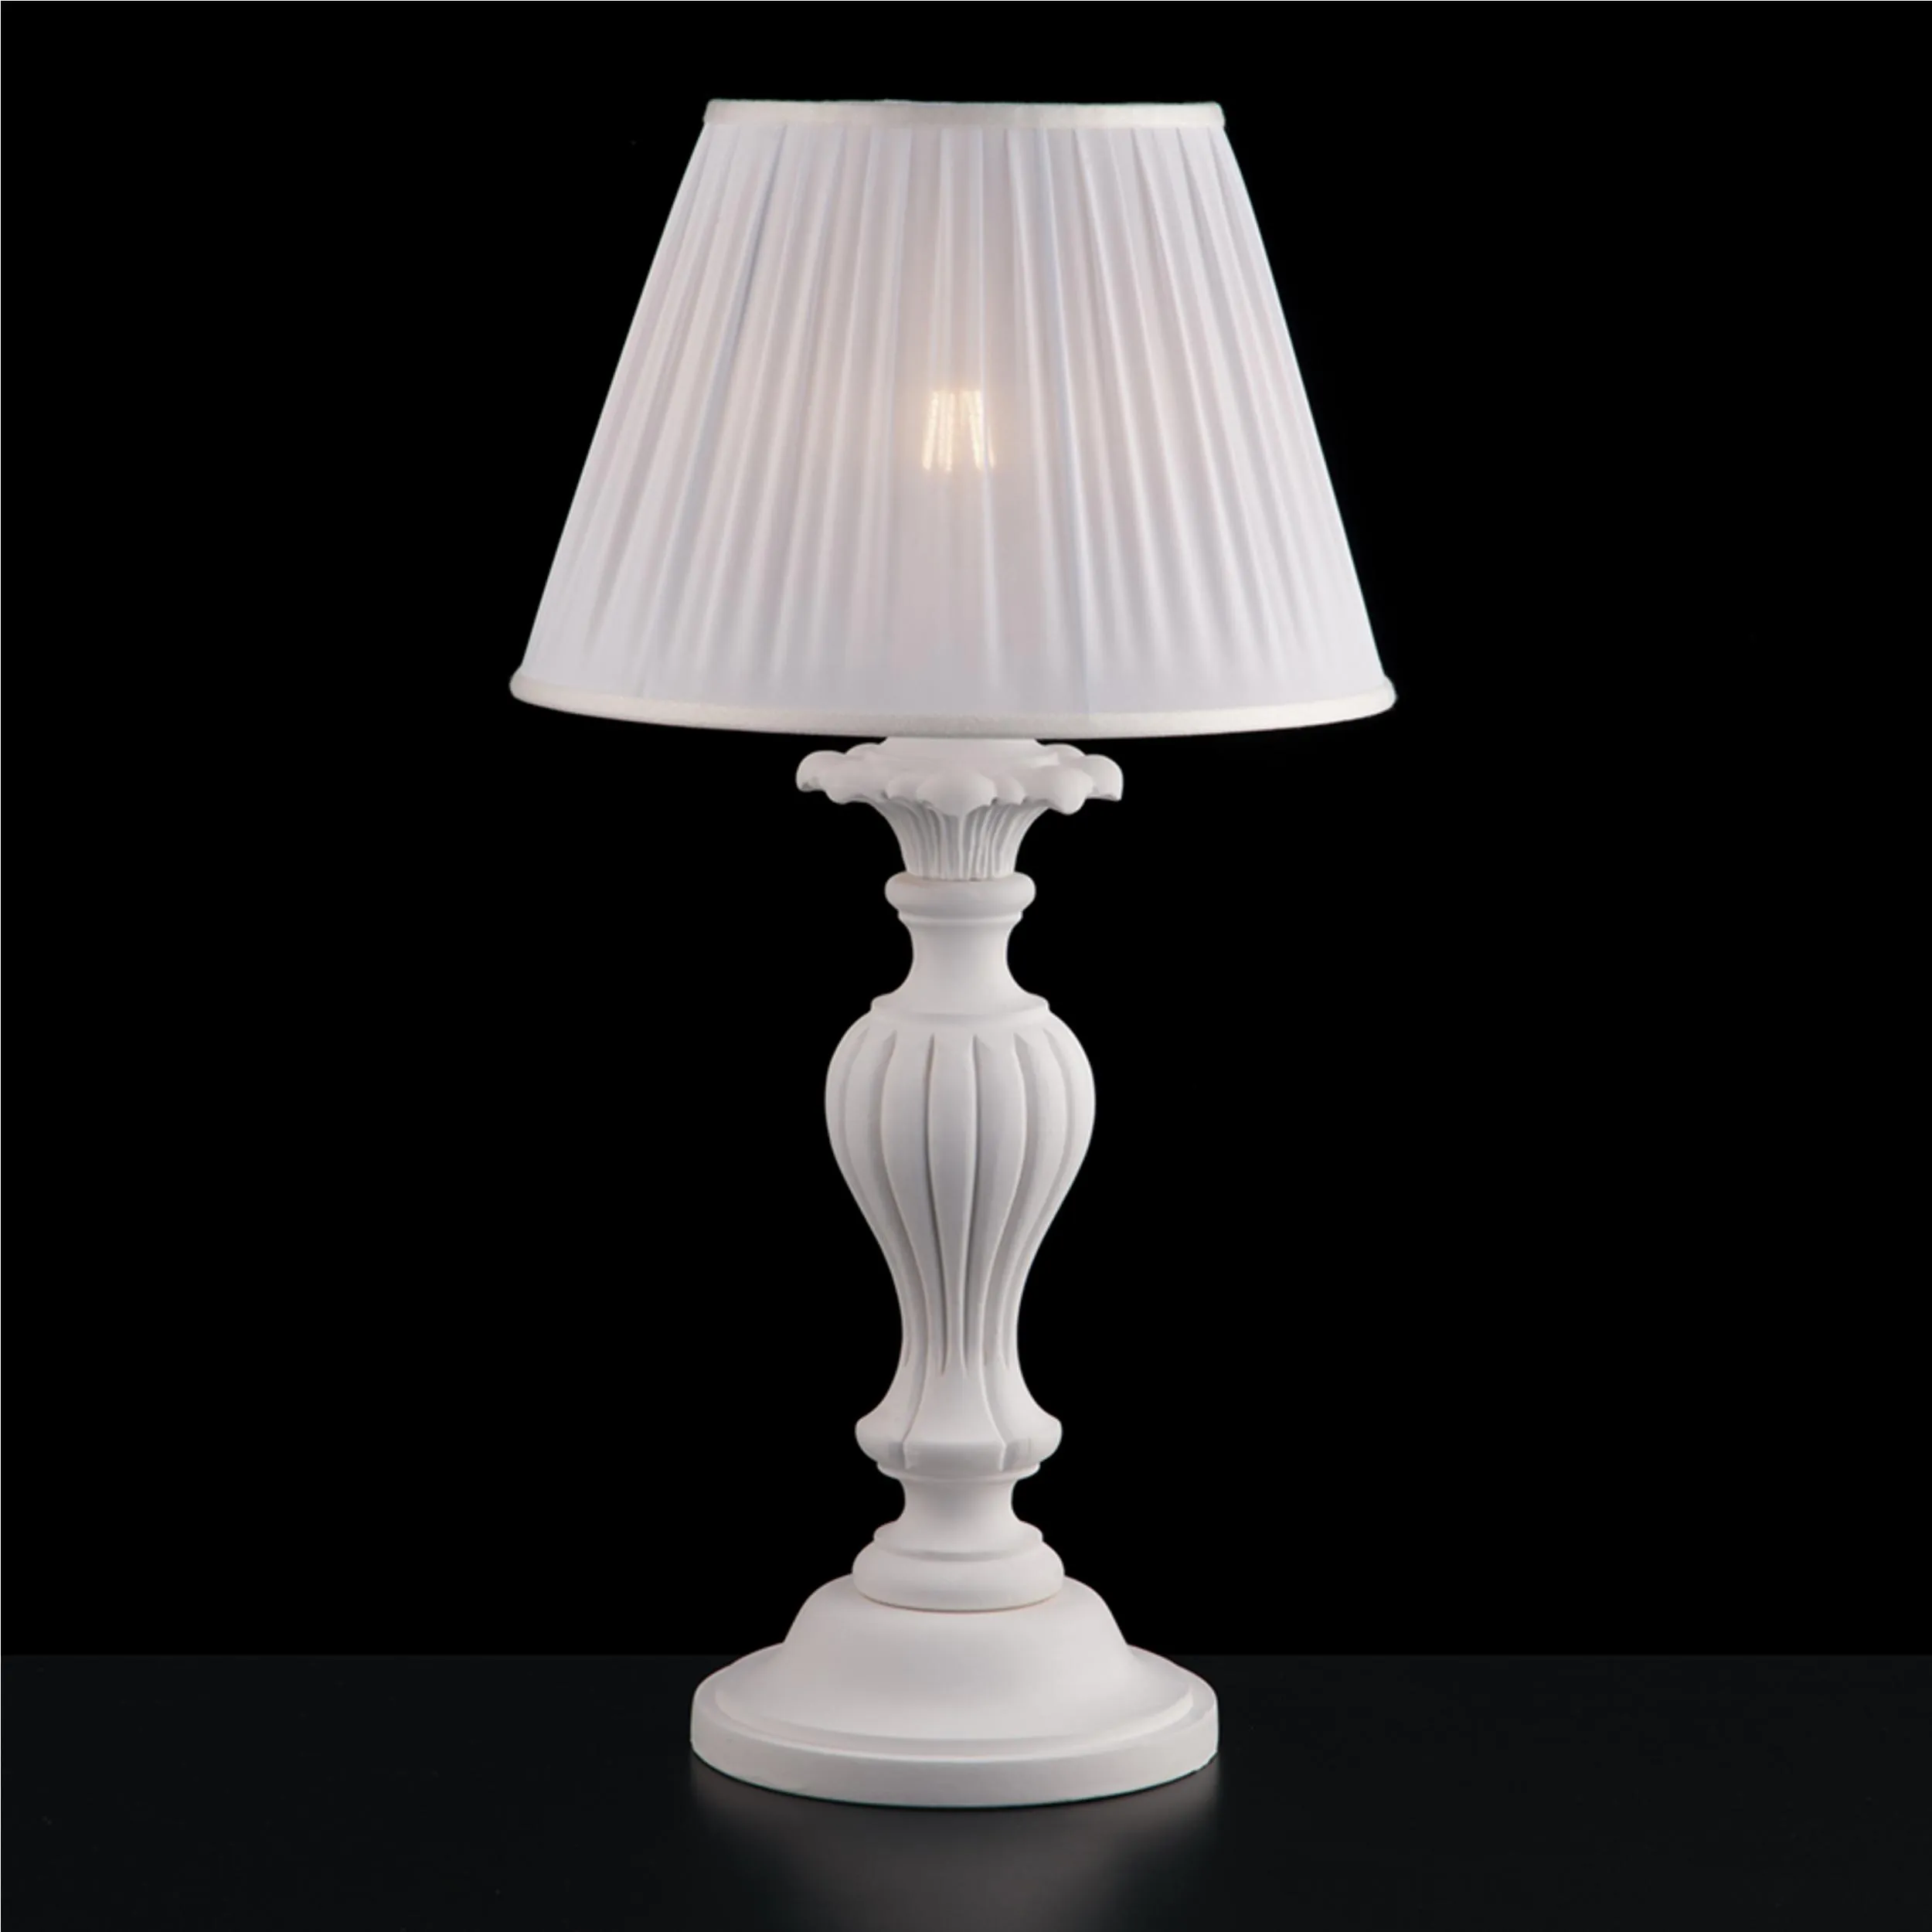 Lampada da tavolo Lume in legno e pasta di legno Bianco Shabby FIORENZA 1 LUCE 30xh57 cm paralume in plisse bianco 30 CM